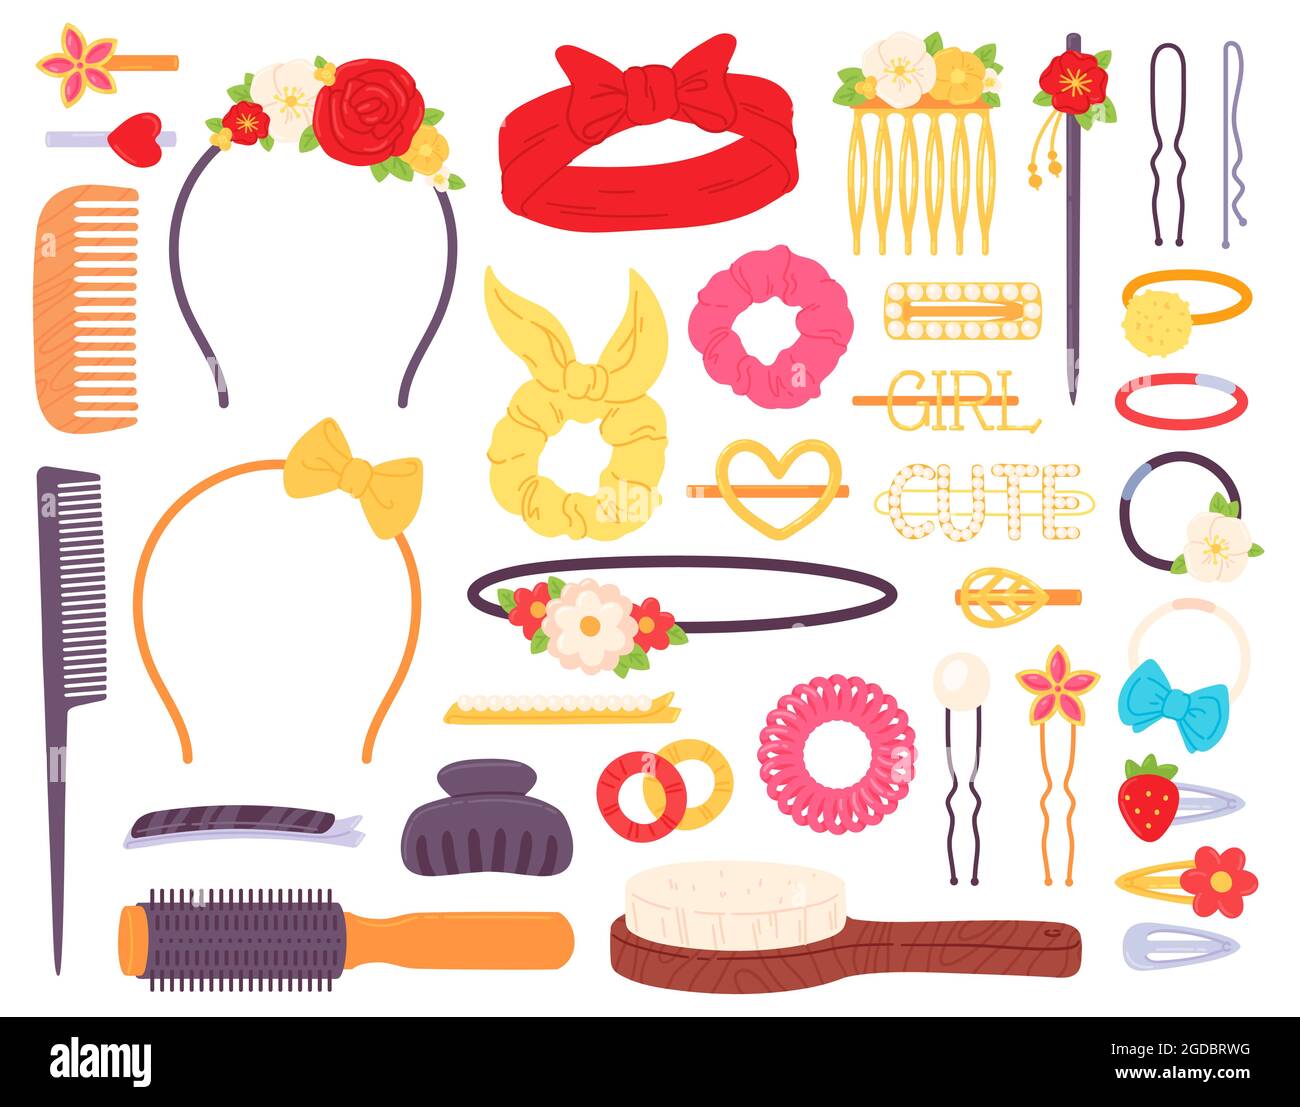 Haarspangen mit Blumen und Perlen, Stirnband und Haarnadeln. Modeschmuck Accessoire für die Frisur. Vektorset für Barrettes, Stifte und Kämme Stock Vektor